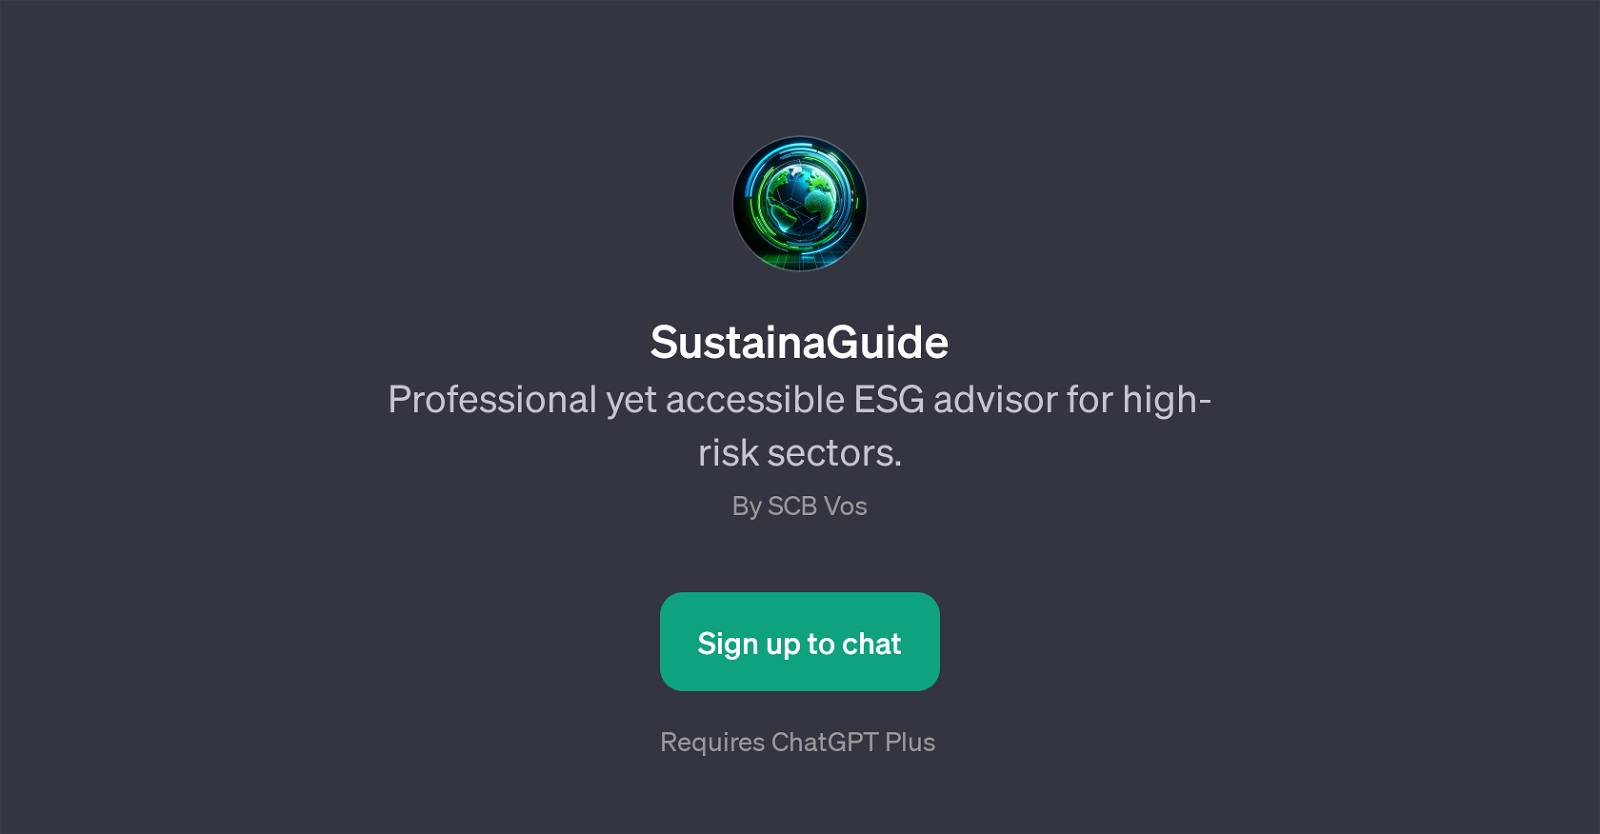 SustainaGuide website